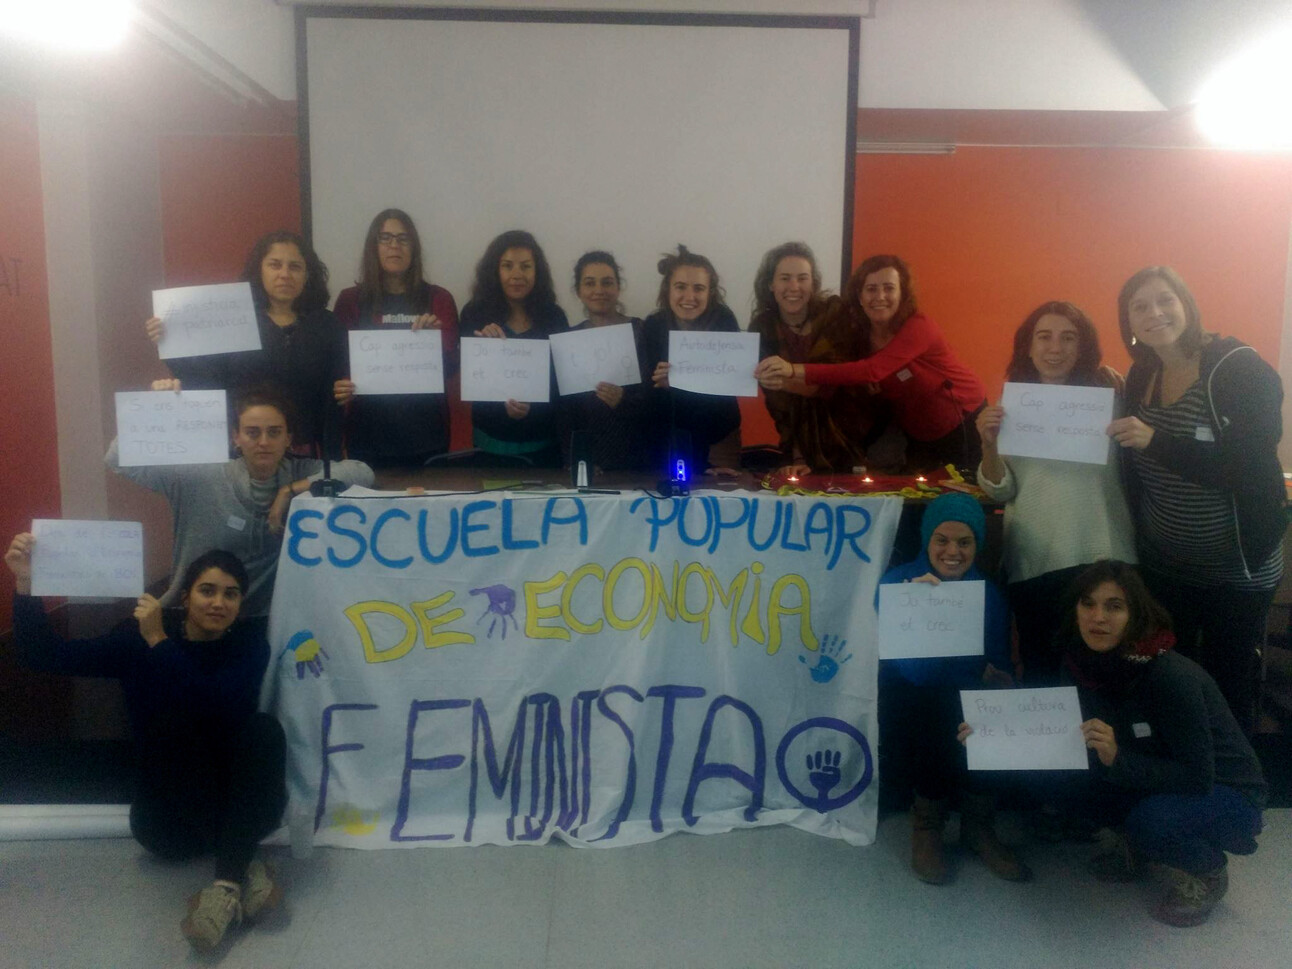 Noies amb pancarta de l'Escola popular d'economia feminista